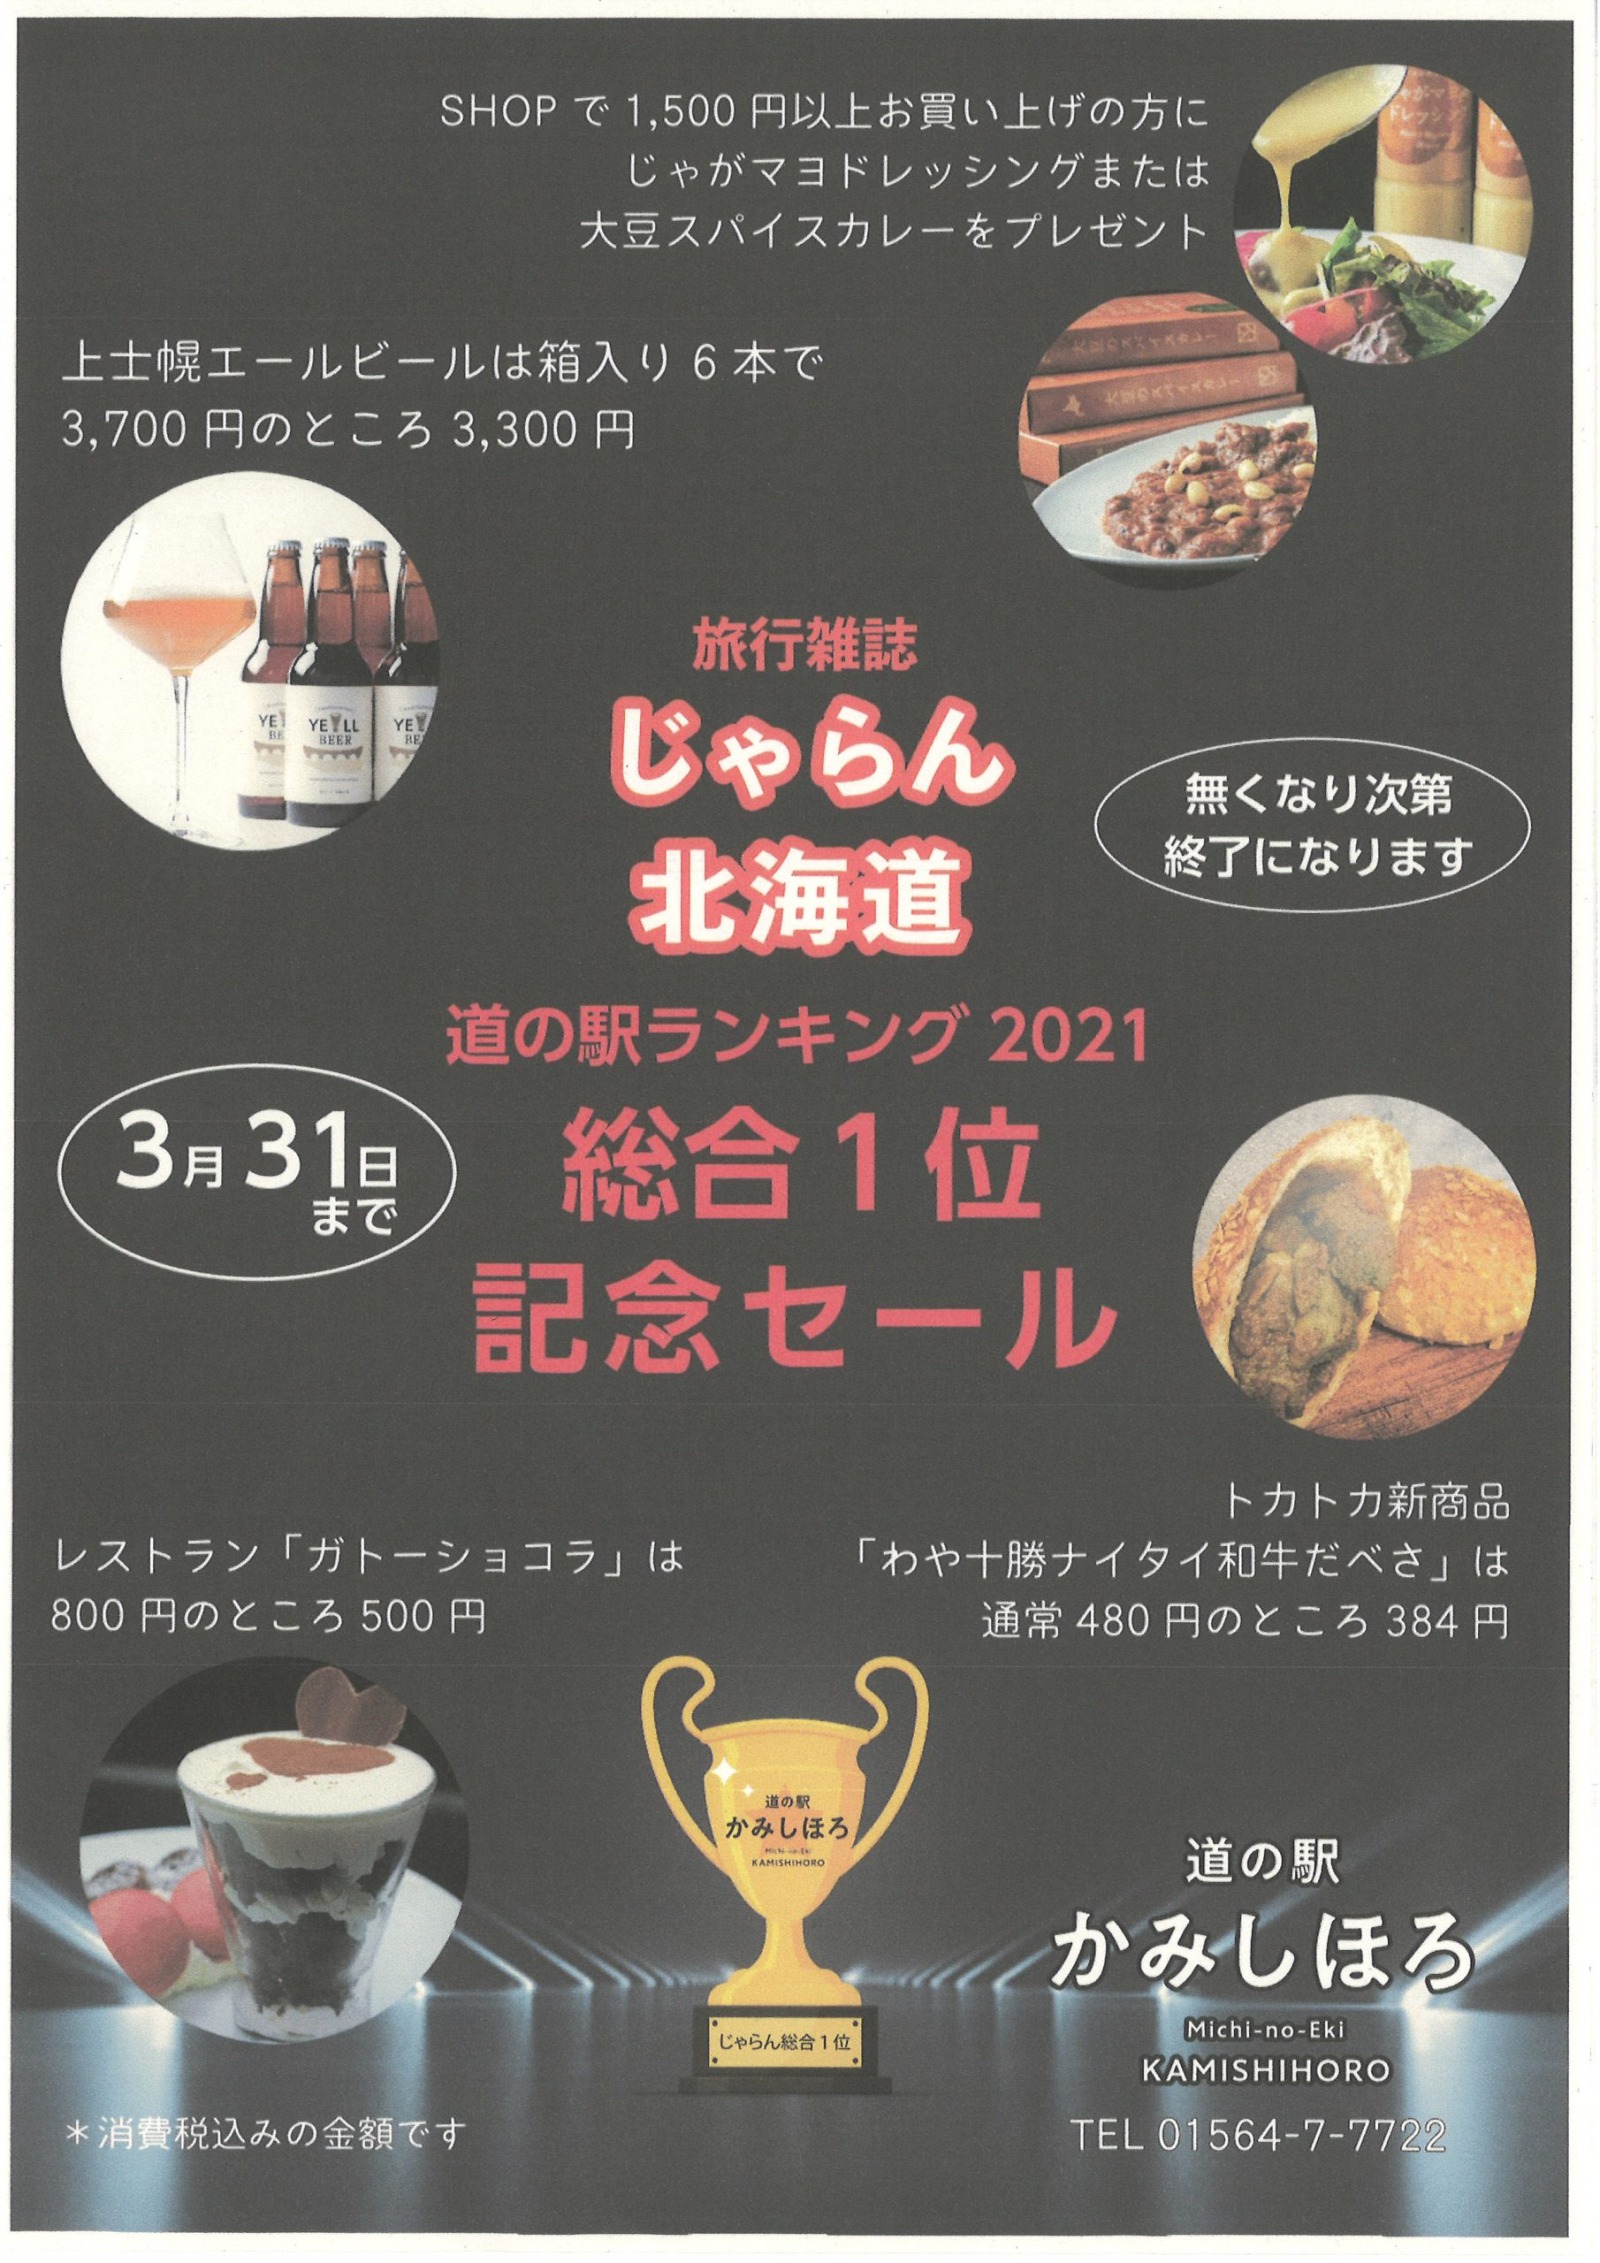 道の駅ランキング総合1位記念セールのお知らせ 北海道 上士幌町